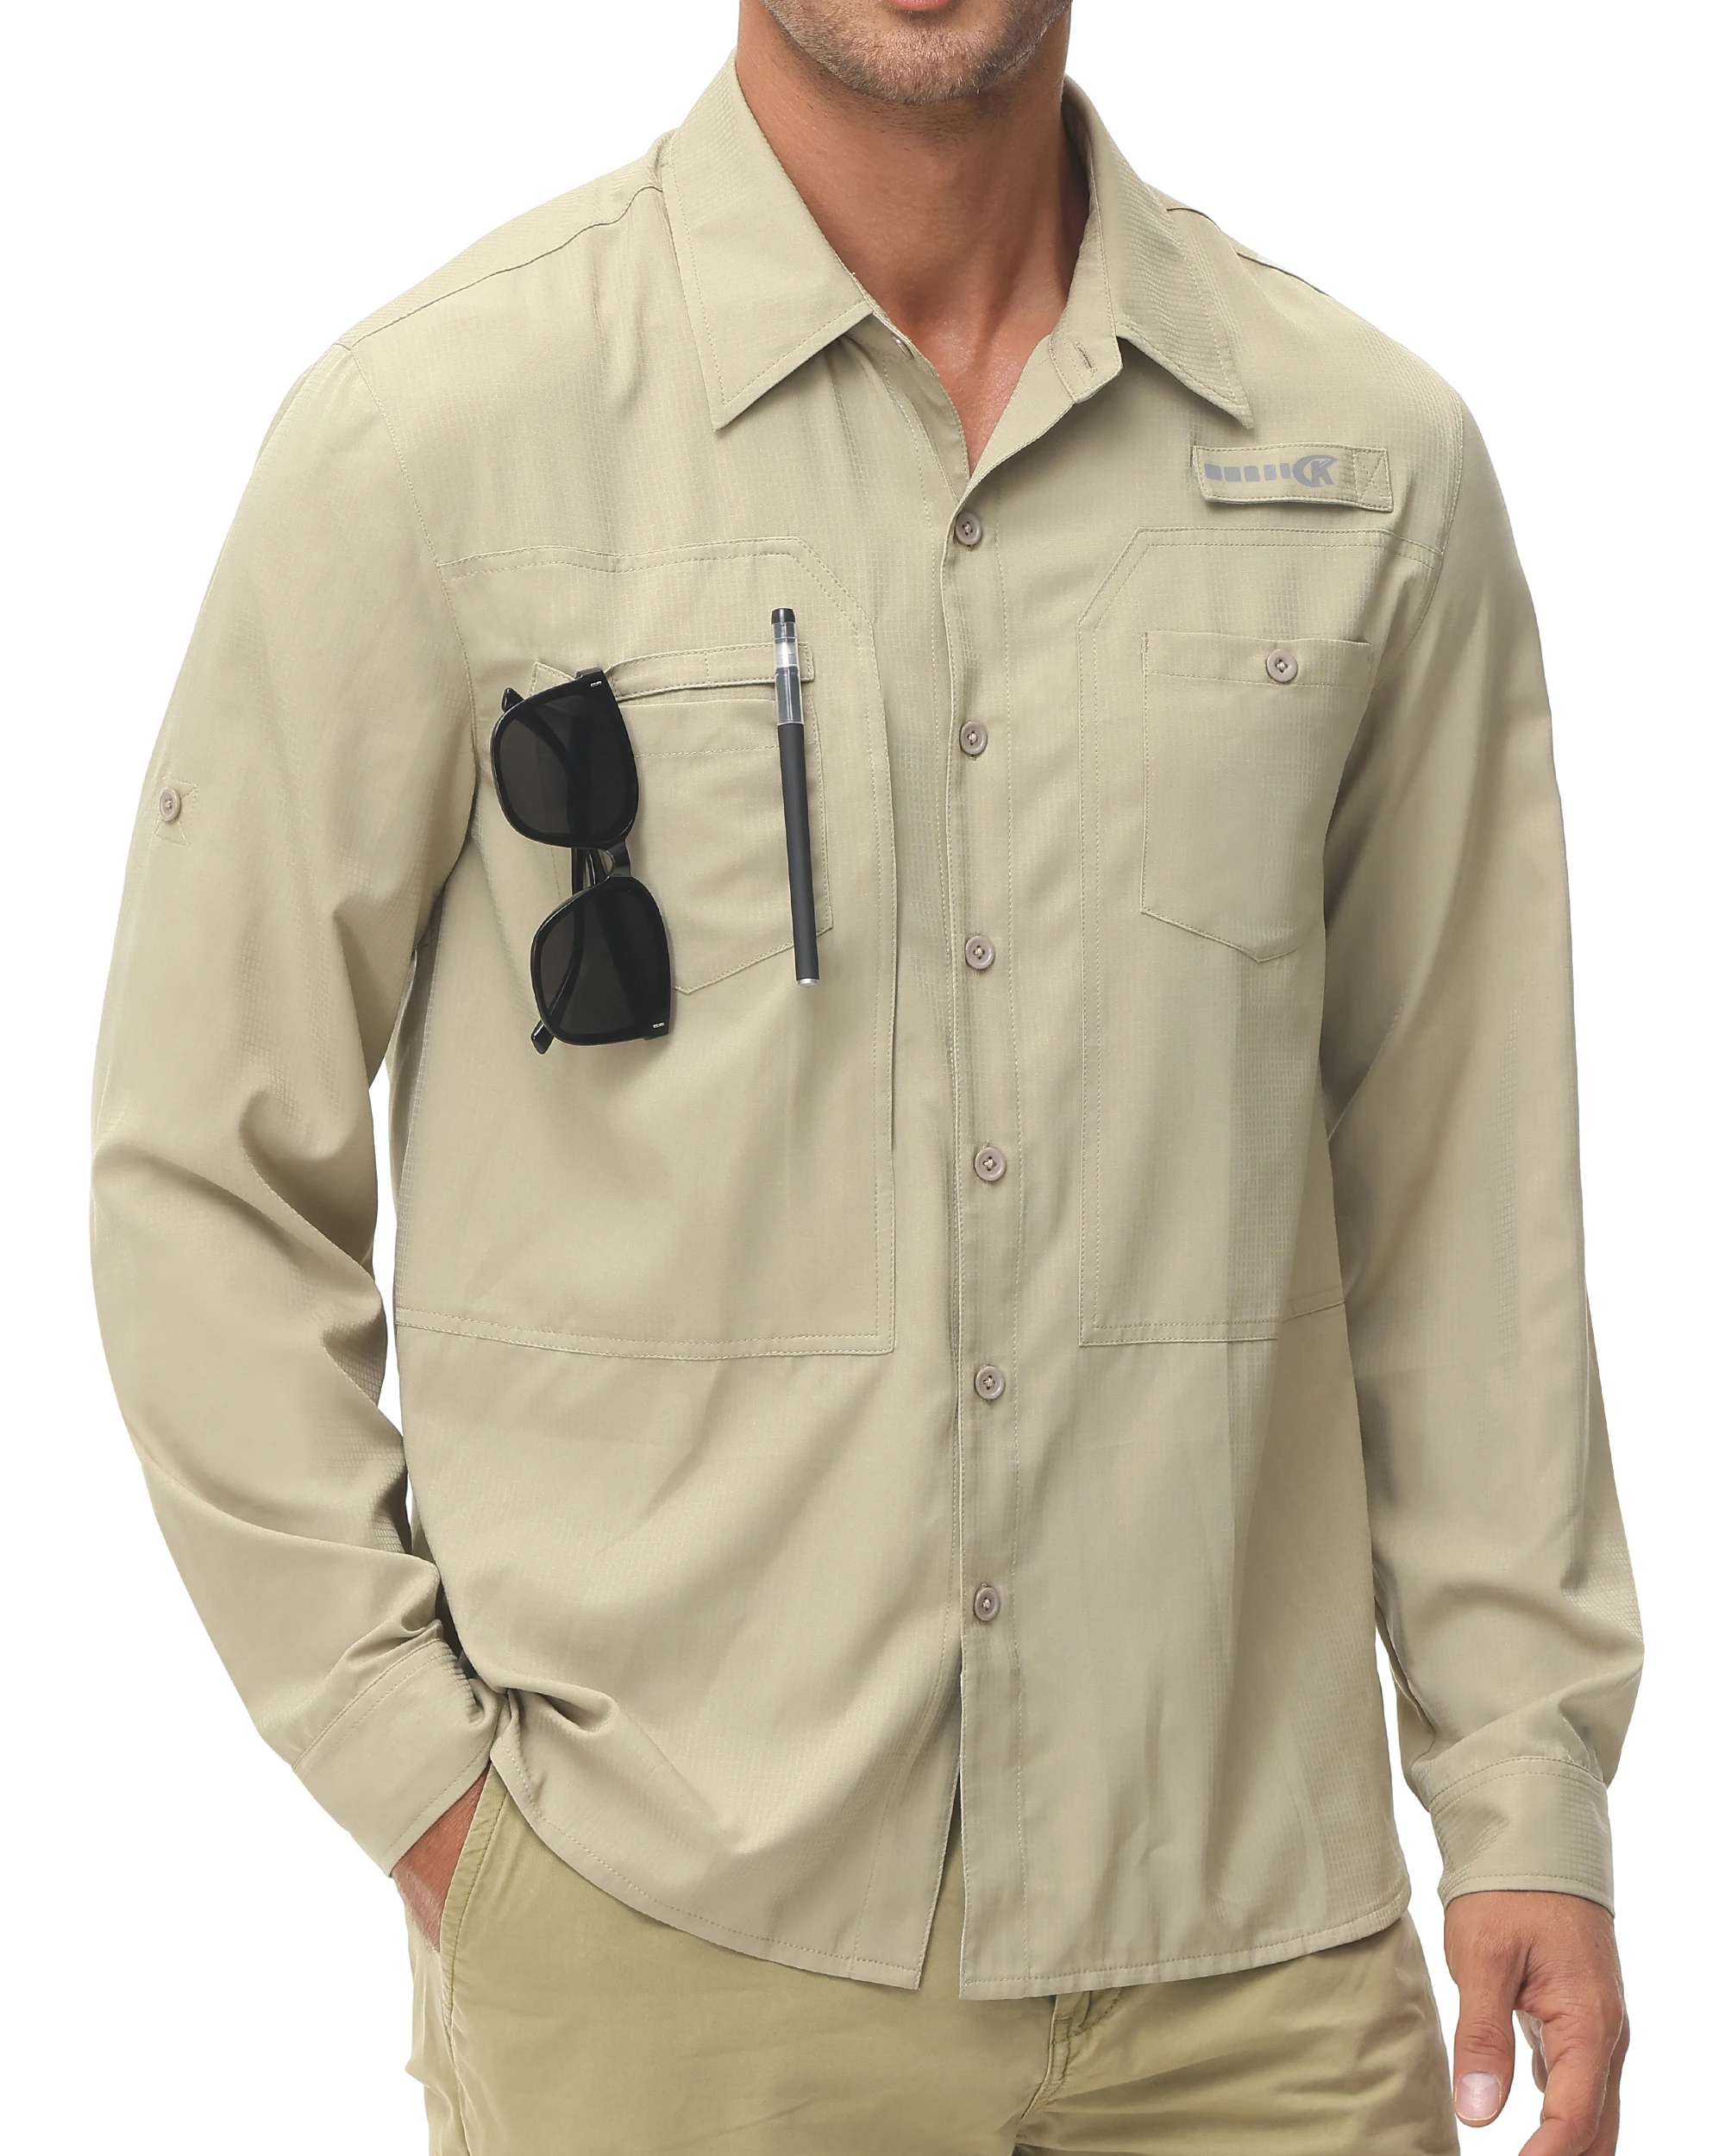 Men's Fishing Shirts Casual Cargo Hiking Shirt Long Sleeve UPF 50+